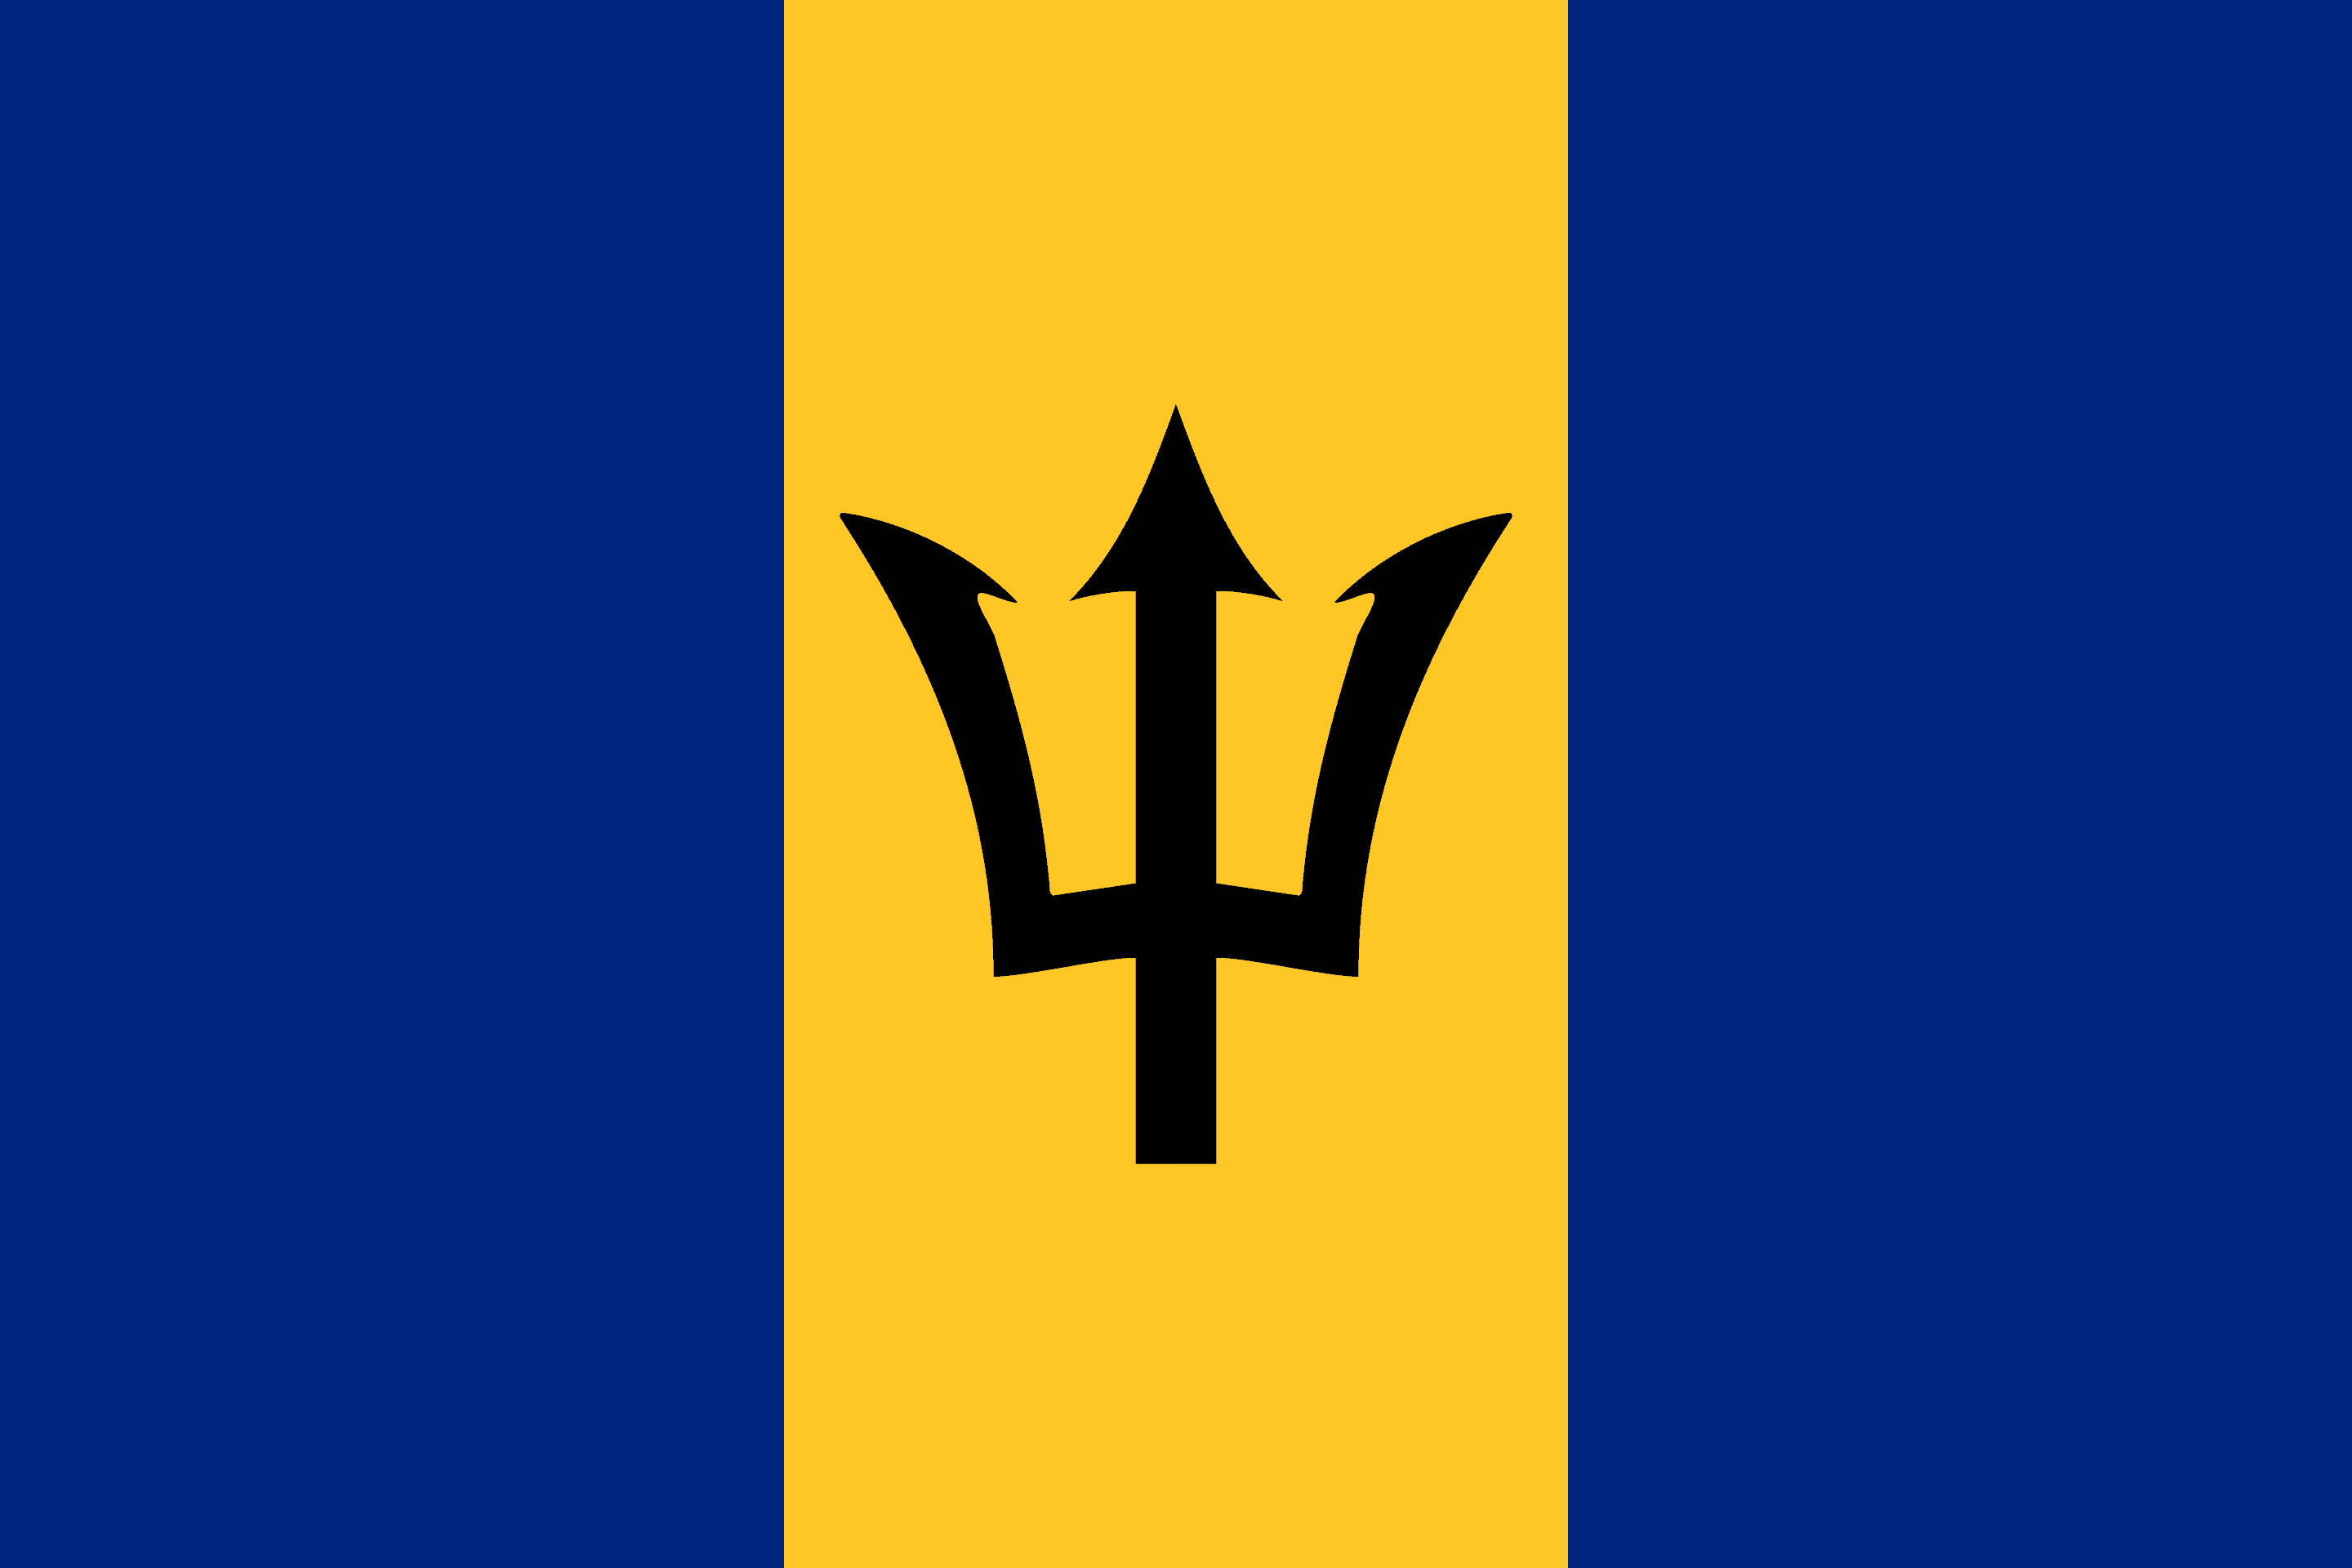 Drone Laws in Barbados